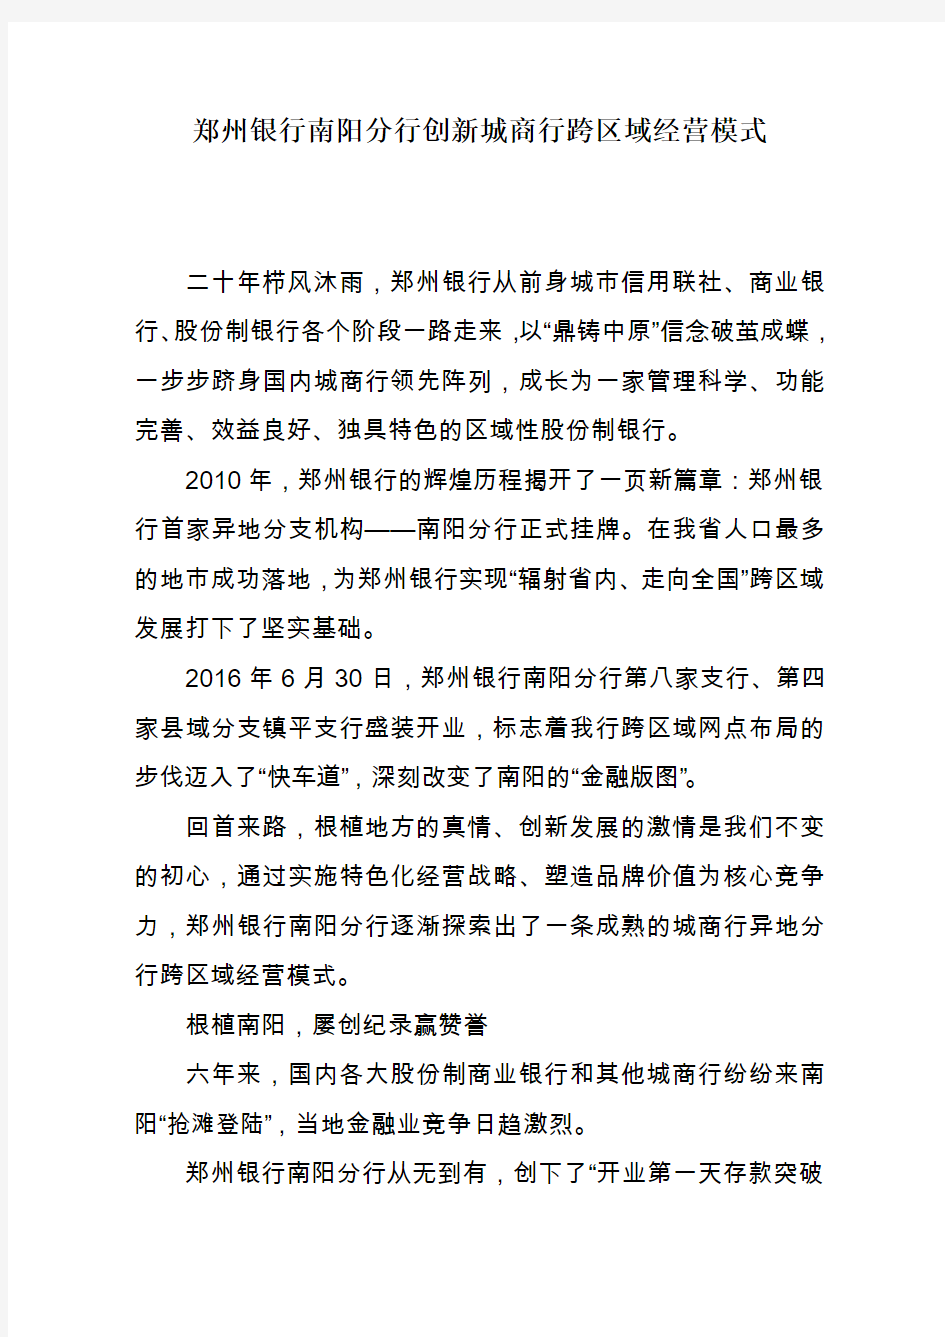 郑州银行南阳分行创新城商行跨区域经营模式